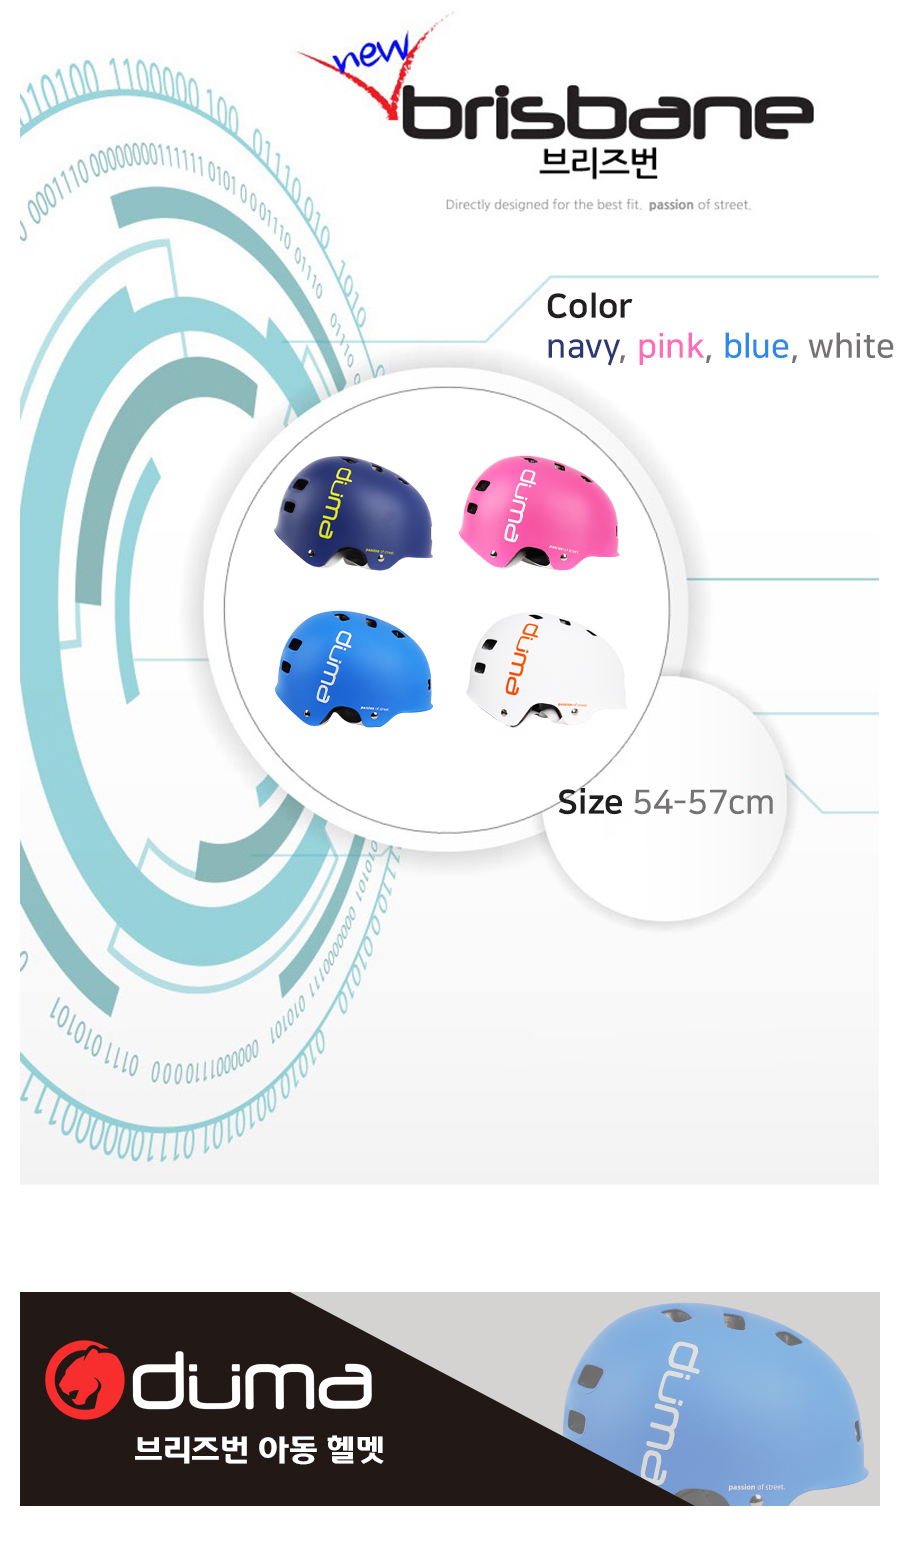 어반헬멧 브리즈번 컬러 - 네이비, 핑크, 블루, 화이트헬멧, 사이즈 54-57cm